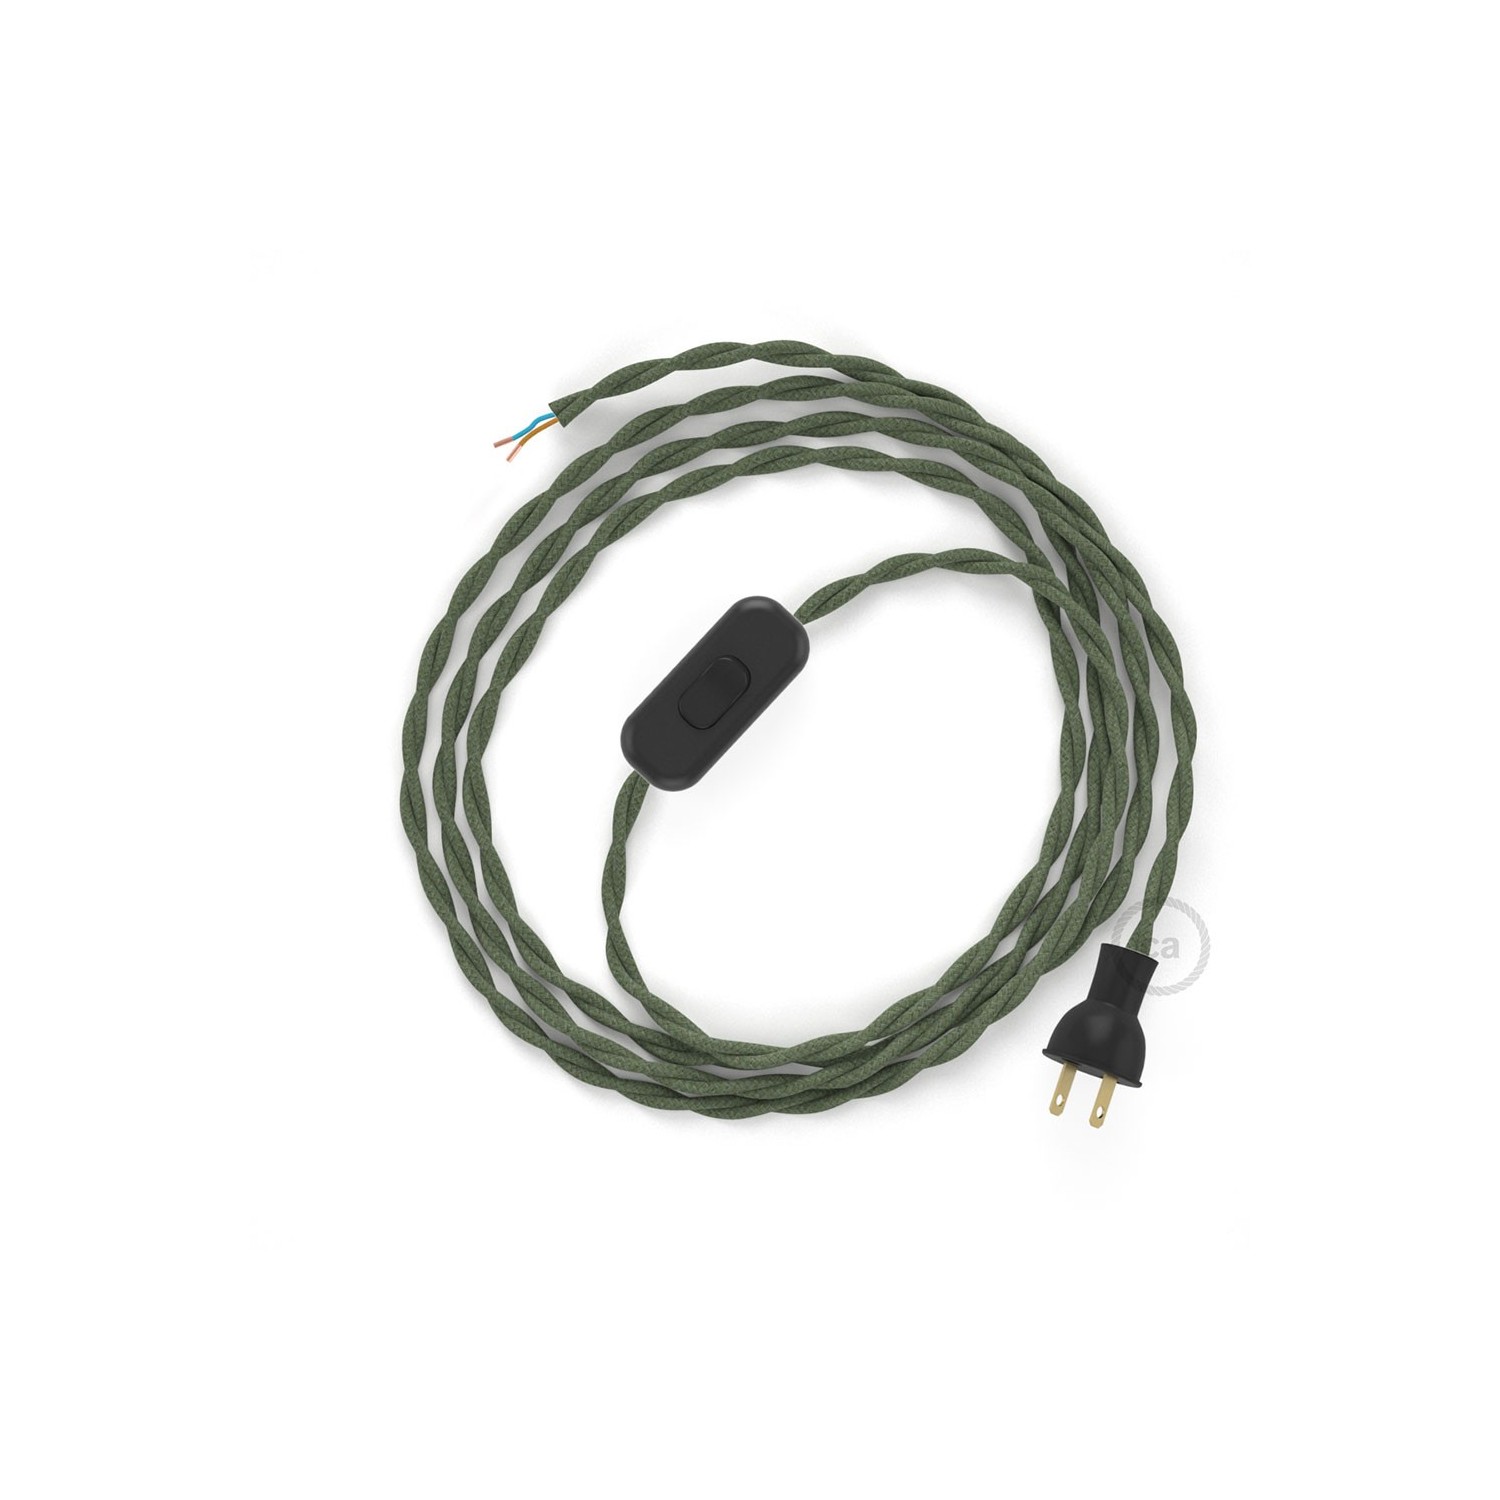 Cableado para lámpara de mesa, cable TC63 Algodón Verde Gris 1,8 m. Elige el color de la clavija y del interruptor!